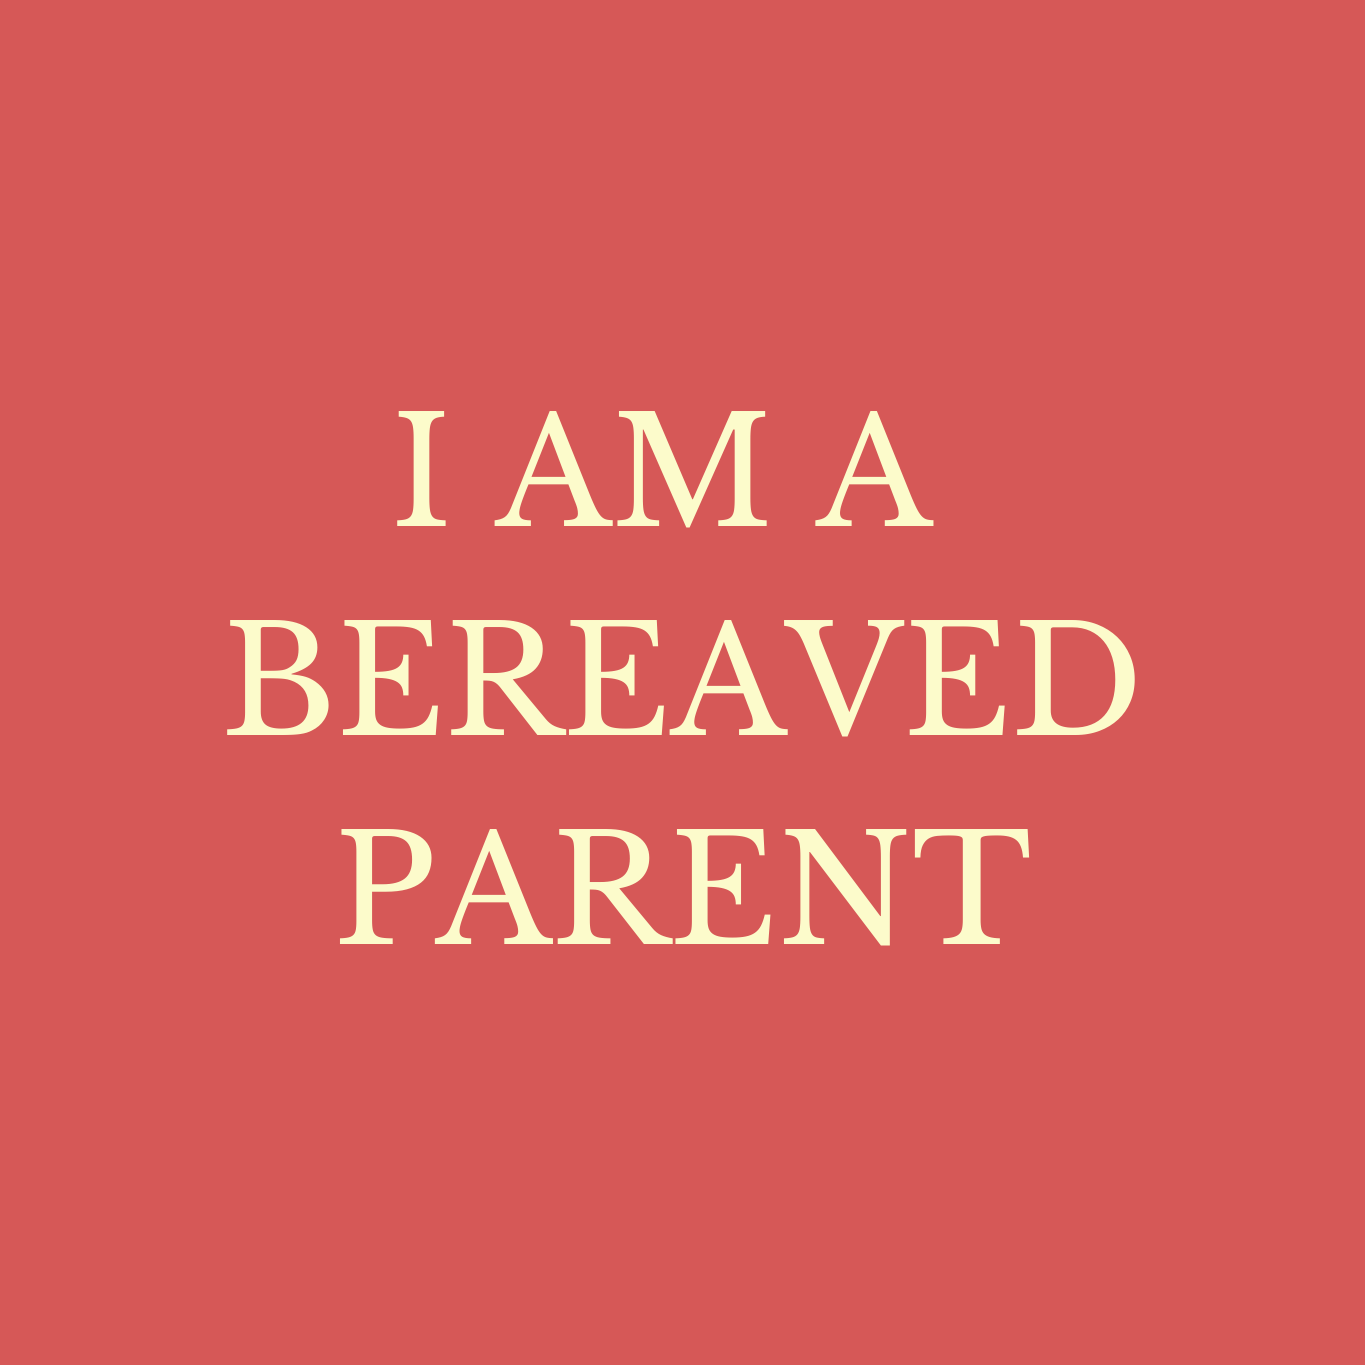 I AM A BEREAVED PARENT copy.png